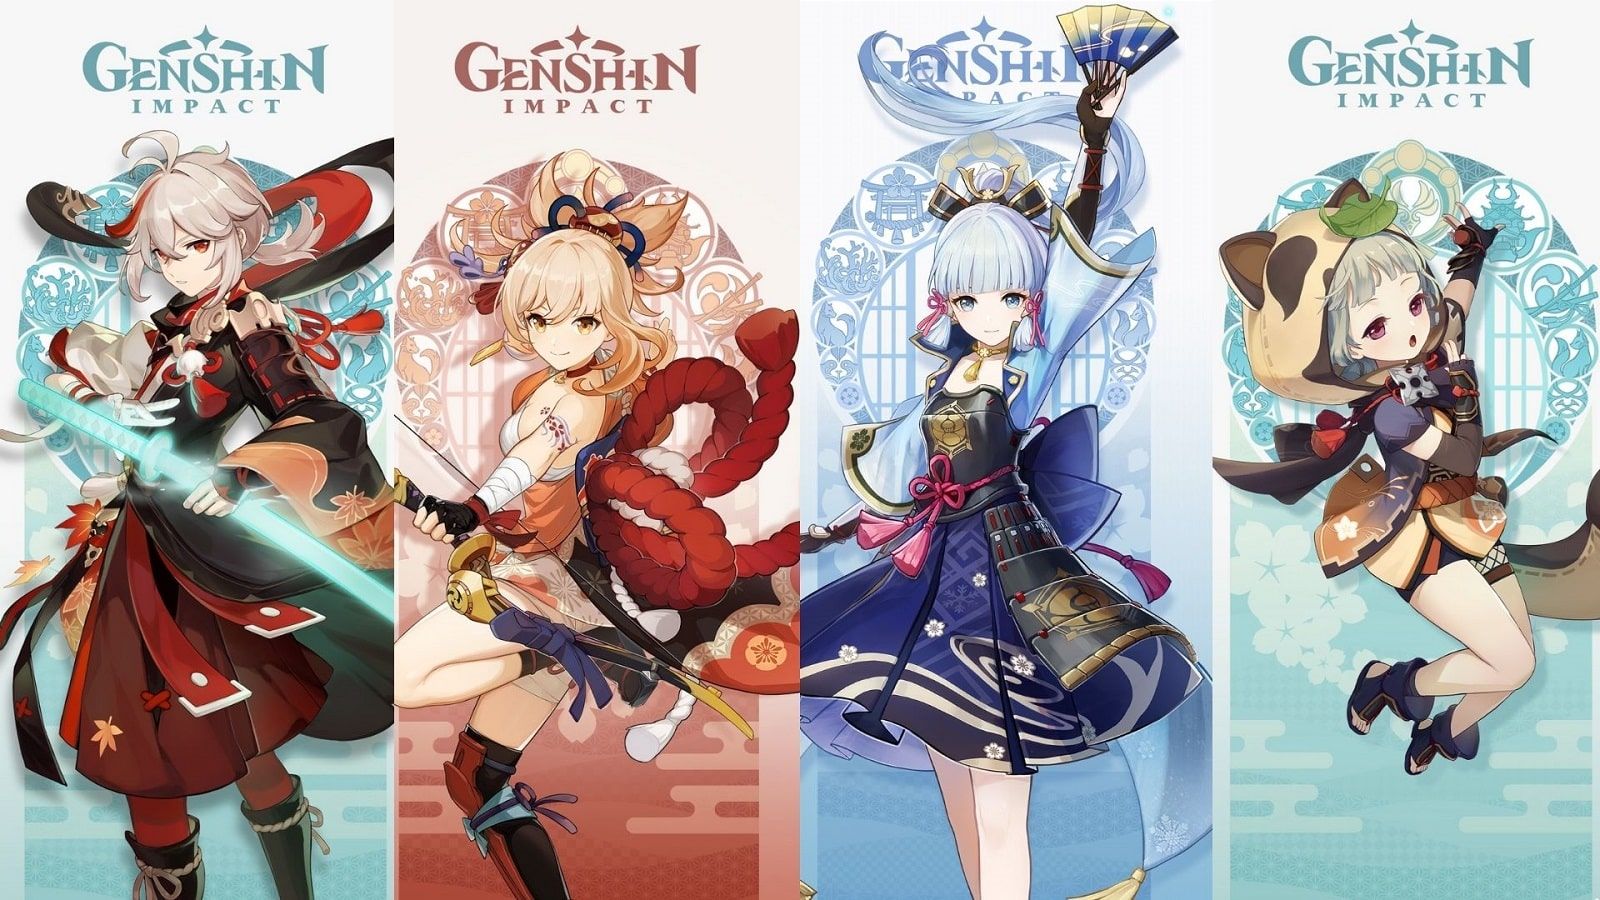 All Genshin Impact Inazuma characters: Baal, Kazuha, Ayaka, Sayu, Yoimiya